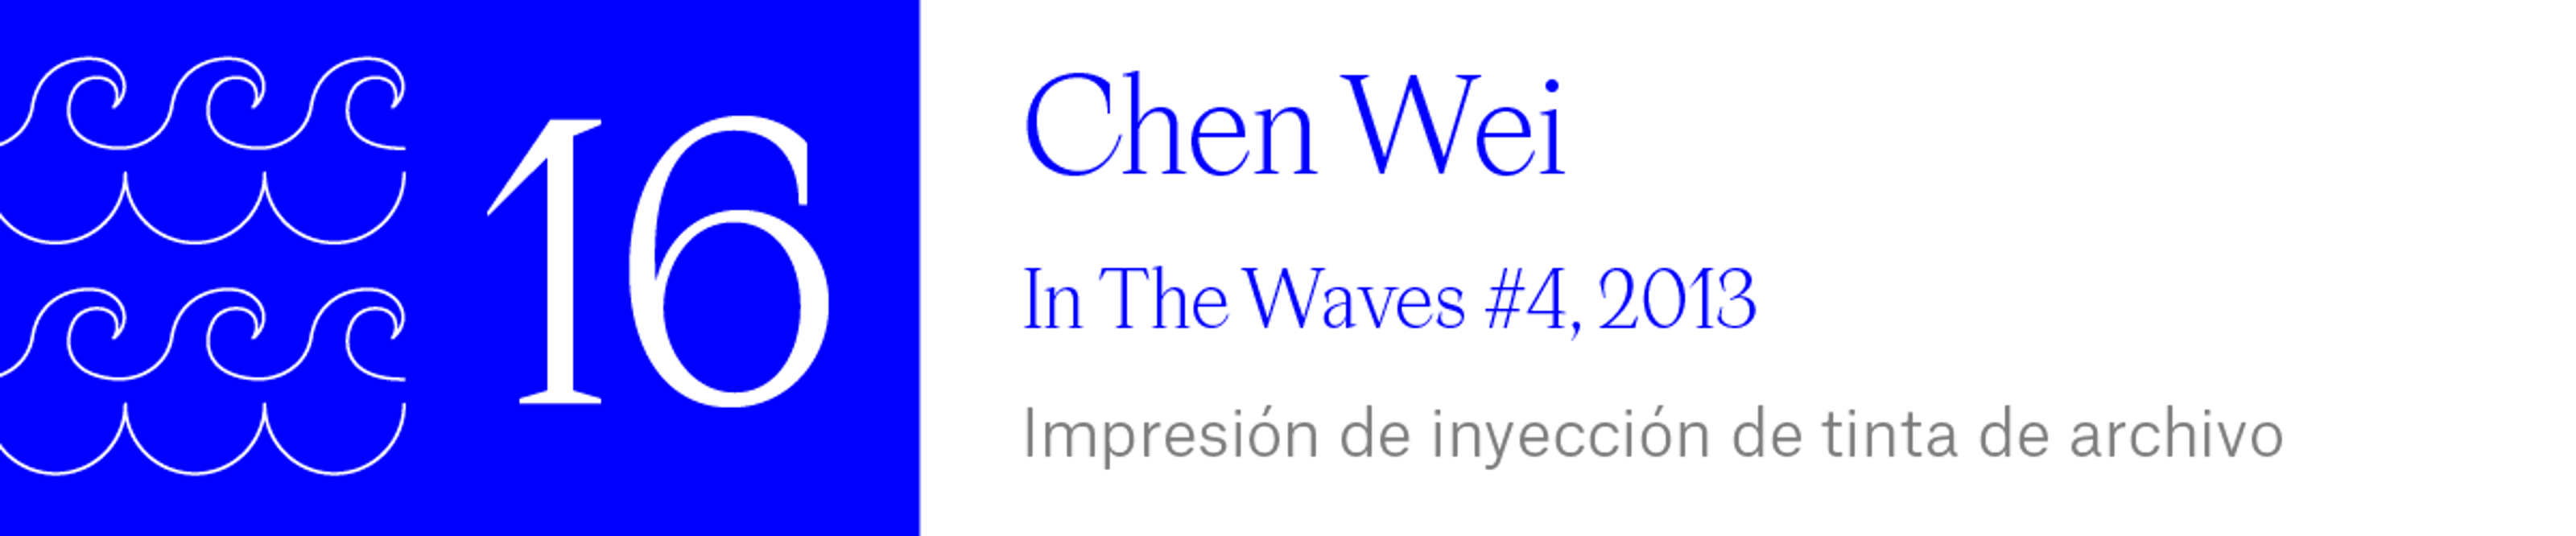 The Wave (16) Chen Wei - In The Waves #4, 2013 Impresión de inyección de tinta de archivo